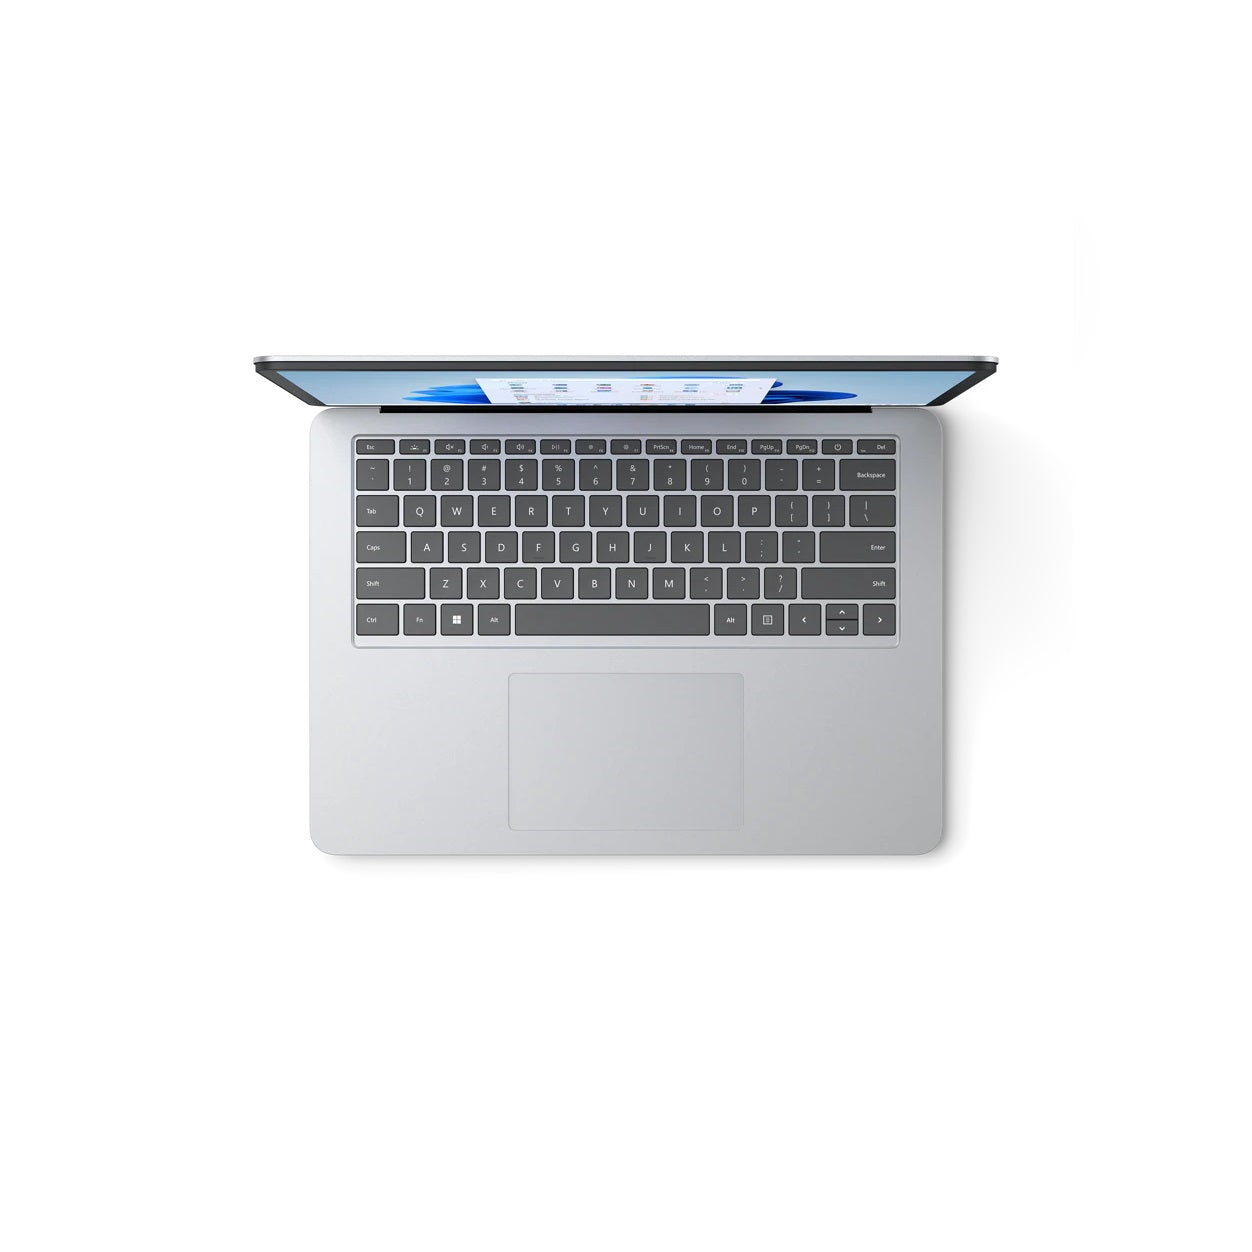 Microsoft Surface Studio THR-00001 14.4" Laptop Platinum